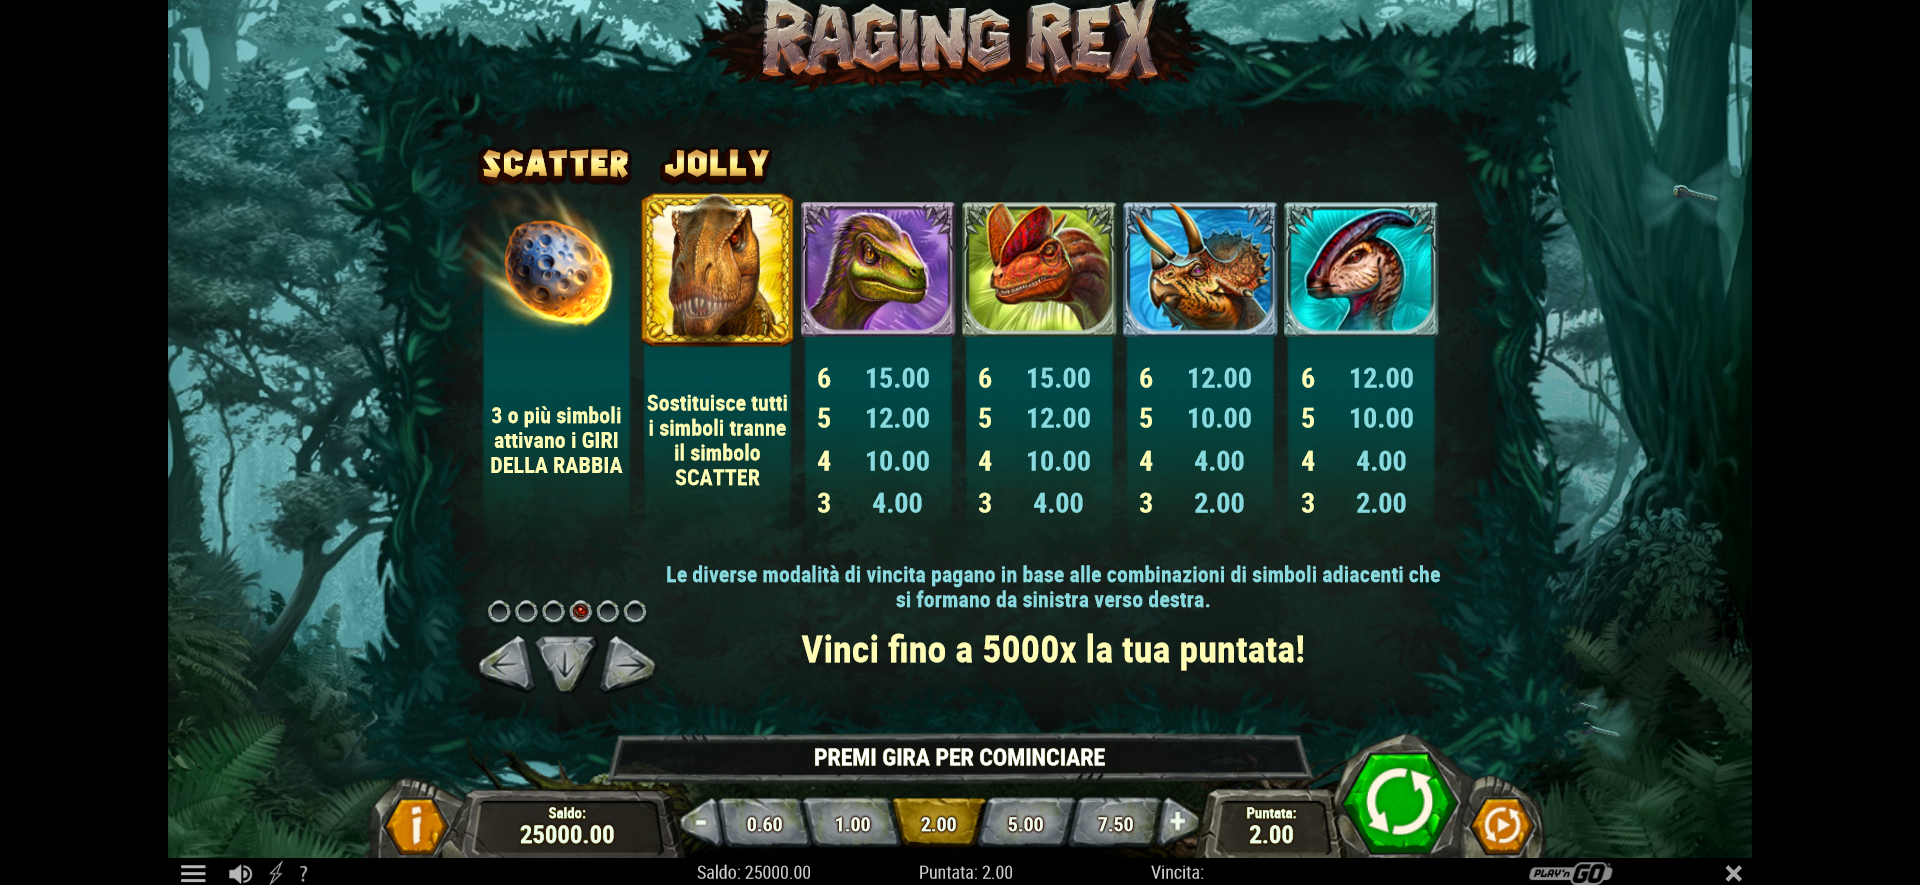 tabella dei simboli della slot machine raging rex